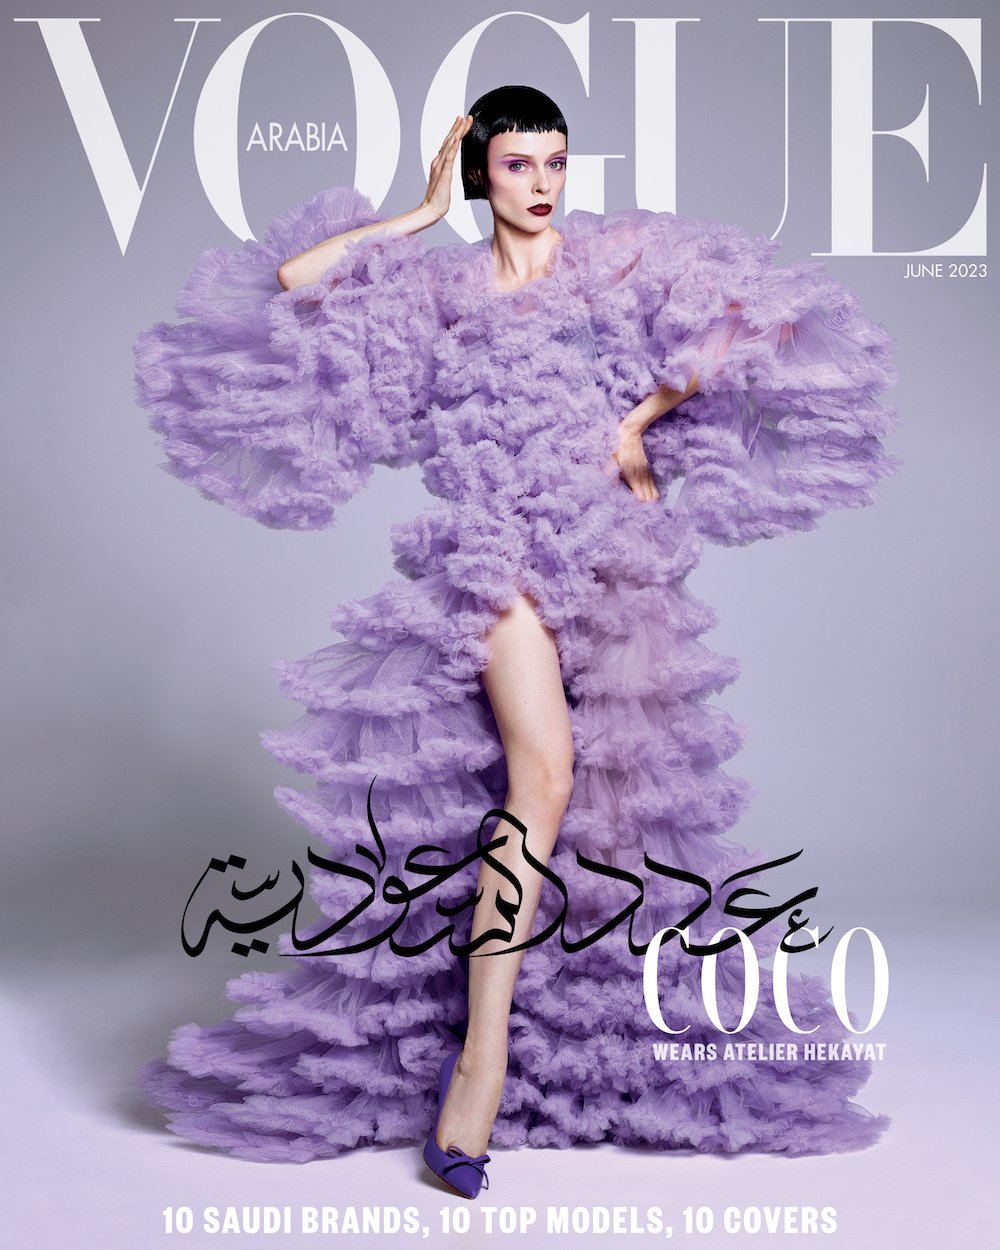 Vogue-Arabia-June-2023-Domen-Van-De-Velde-00003.jpeg